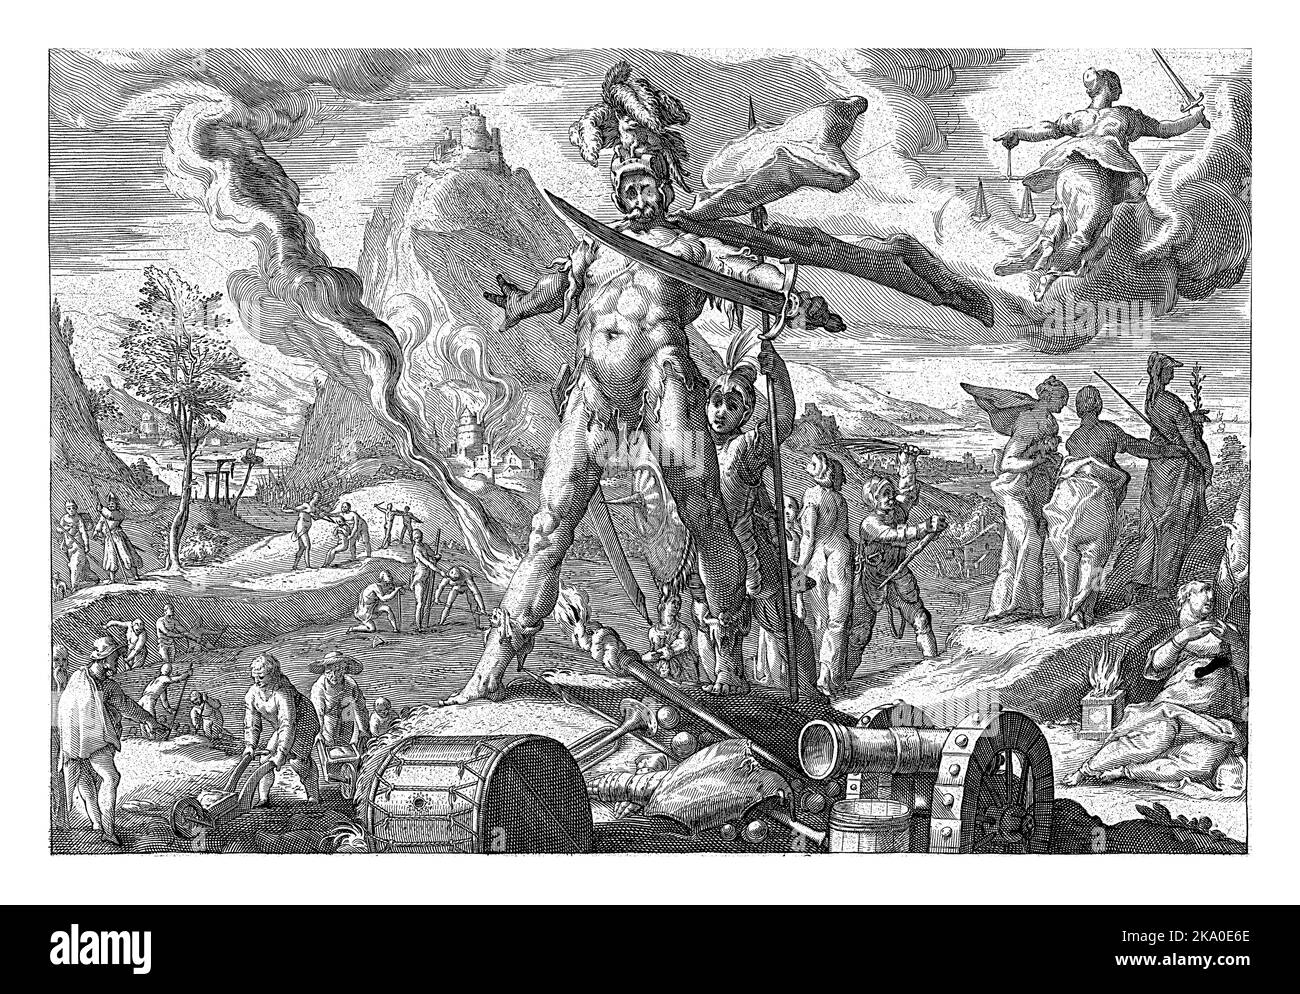 Vorstellung vom Leben in der Eisenzeit: Soldaten verletzen, töten oder vertreiben Menschen, Gebäude brennen. Im Vordergrund der gott Mars. Stockfoto